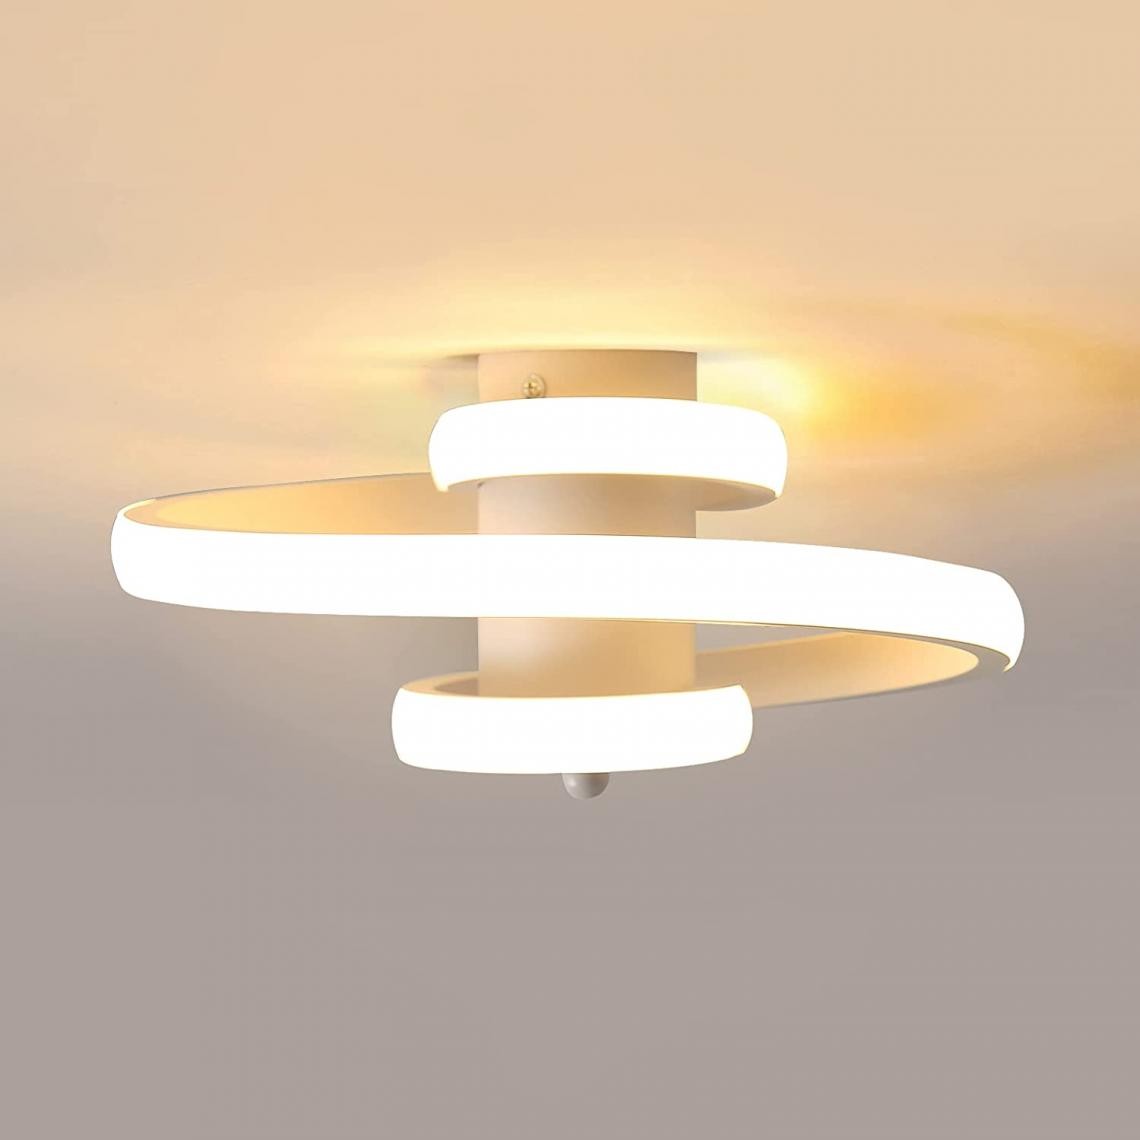 Goeco - LED Plafonnier Moderne, 24W Simple en Forme de Ruban en Spirale Design Lustre, 3500K Lumière Blanche Chaude Éclairage de Plafond pour Salon, Chambre à Coucher, Salle à Manger, Couloir (Blanc). - Plafonniers